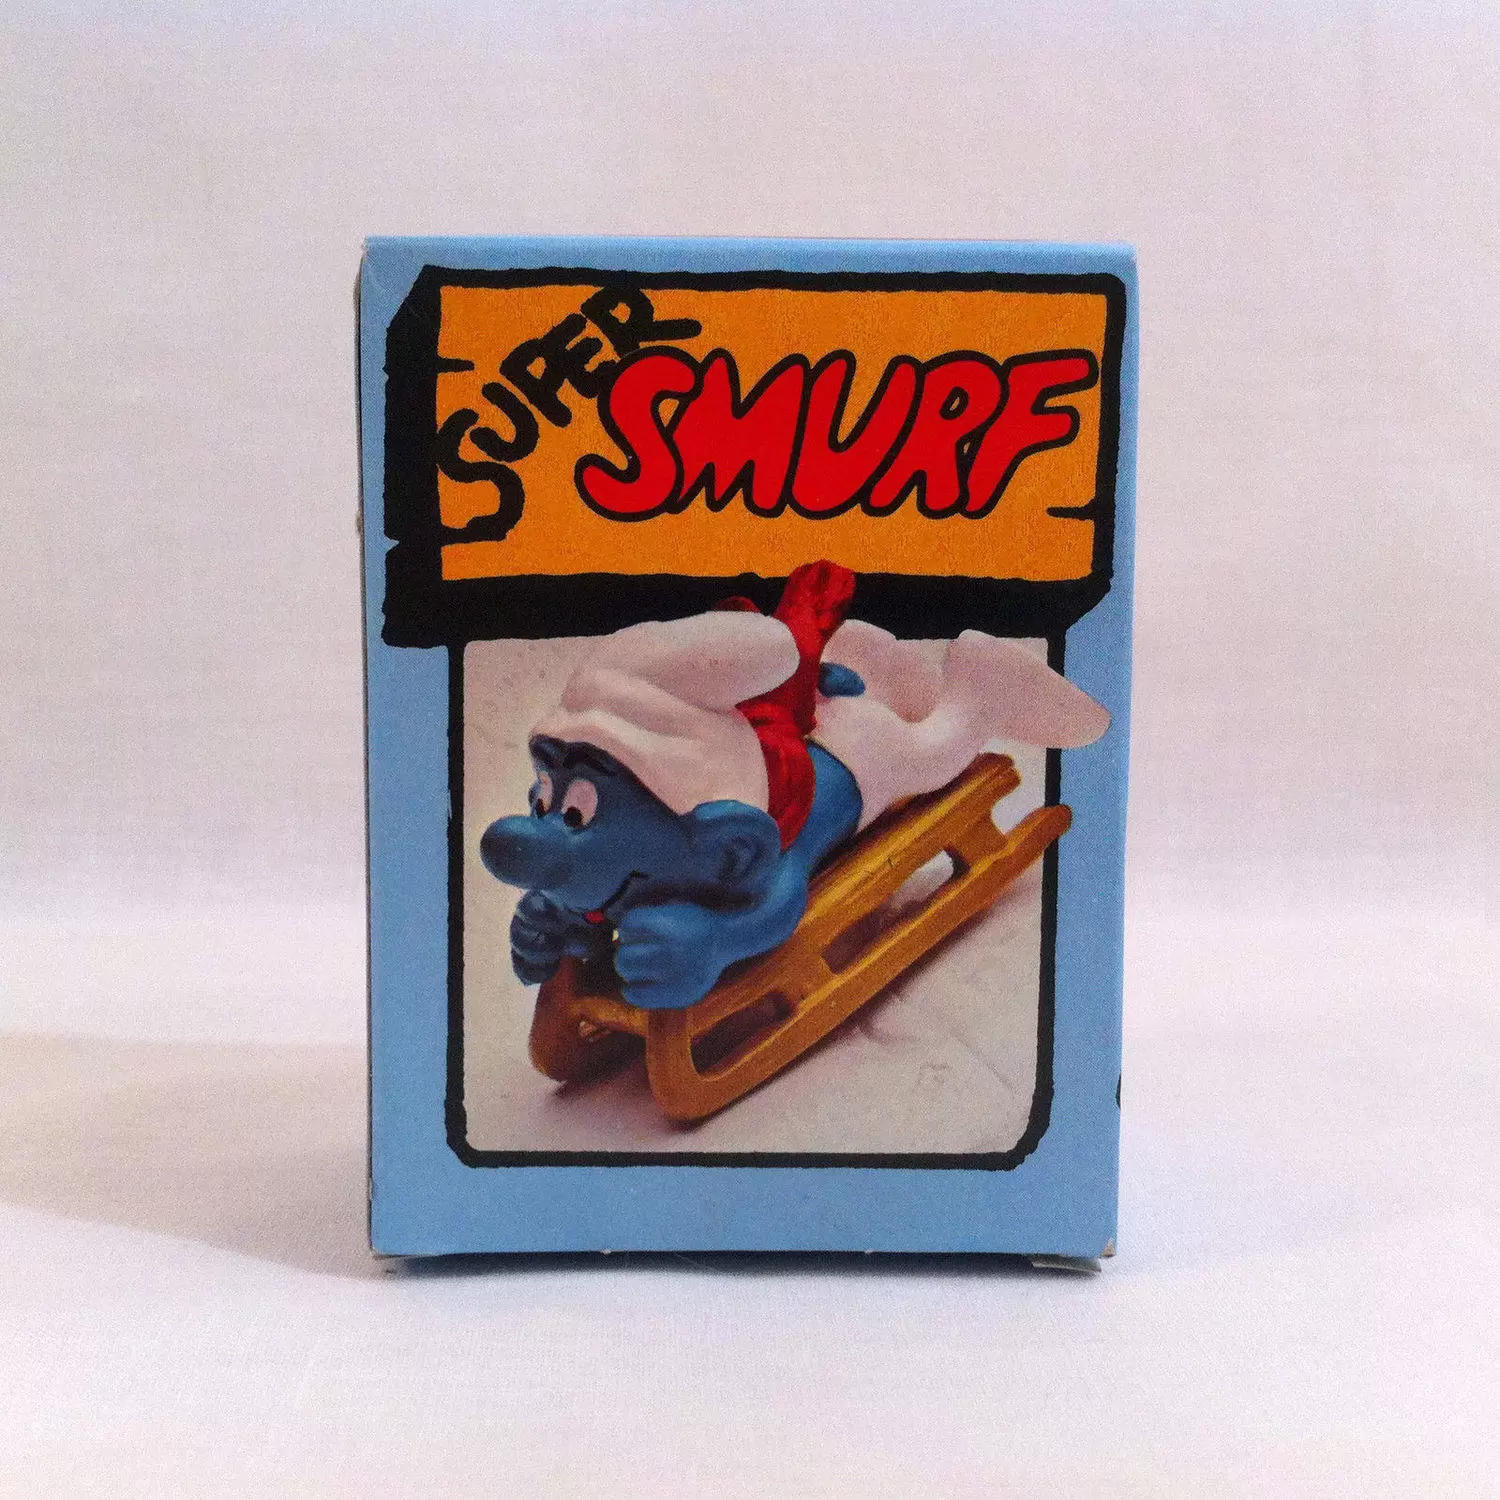 Super Smurfs - BobSled